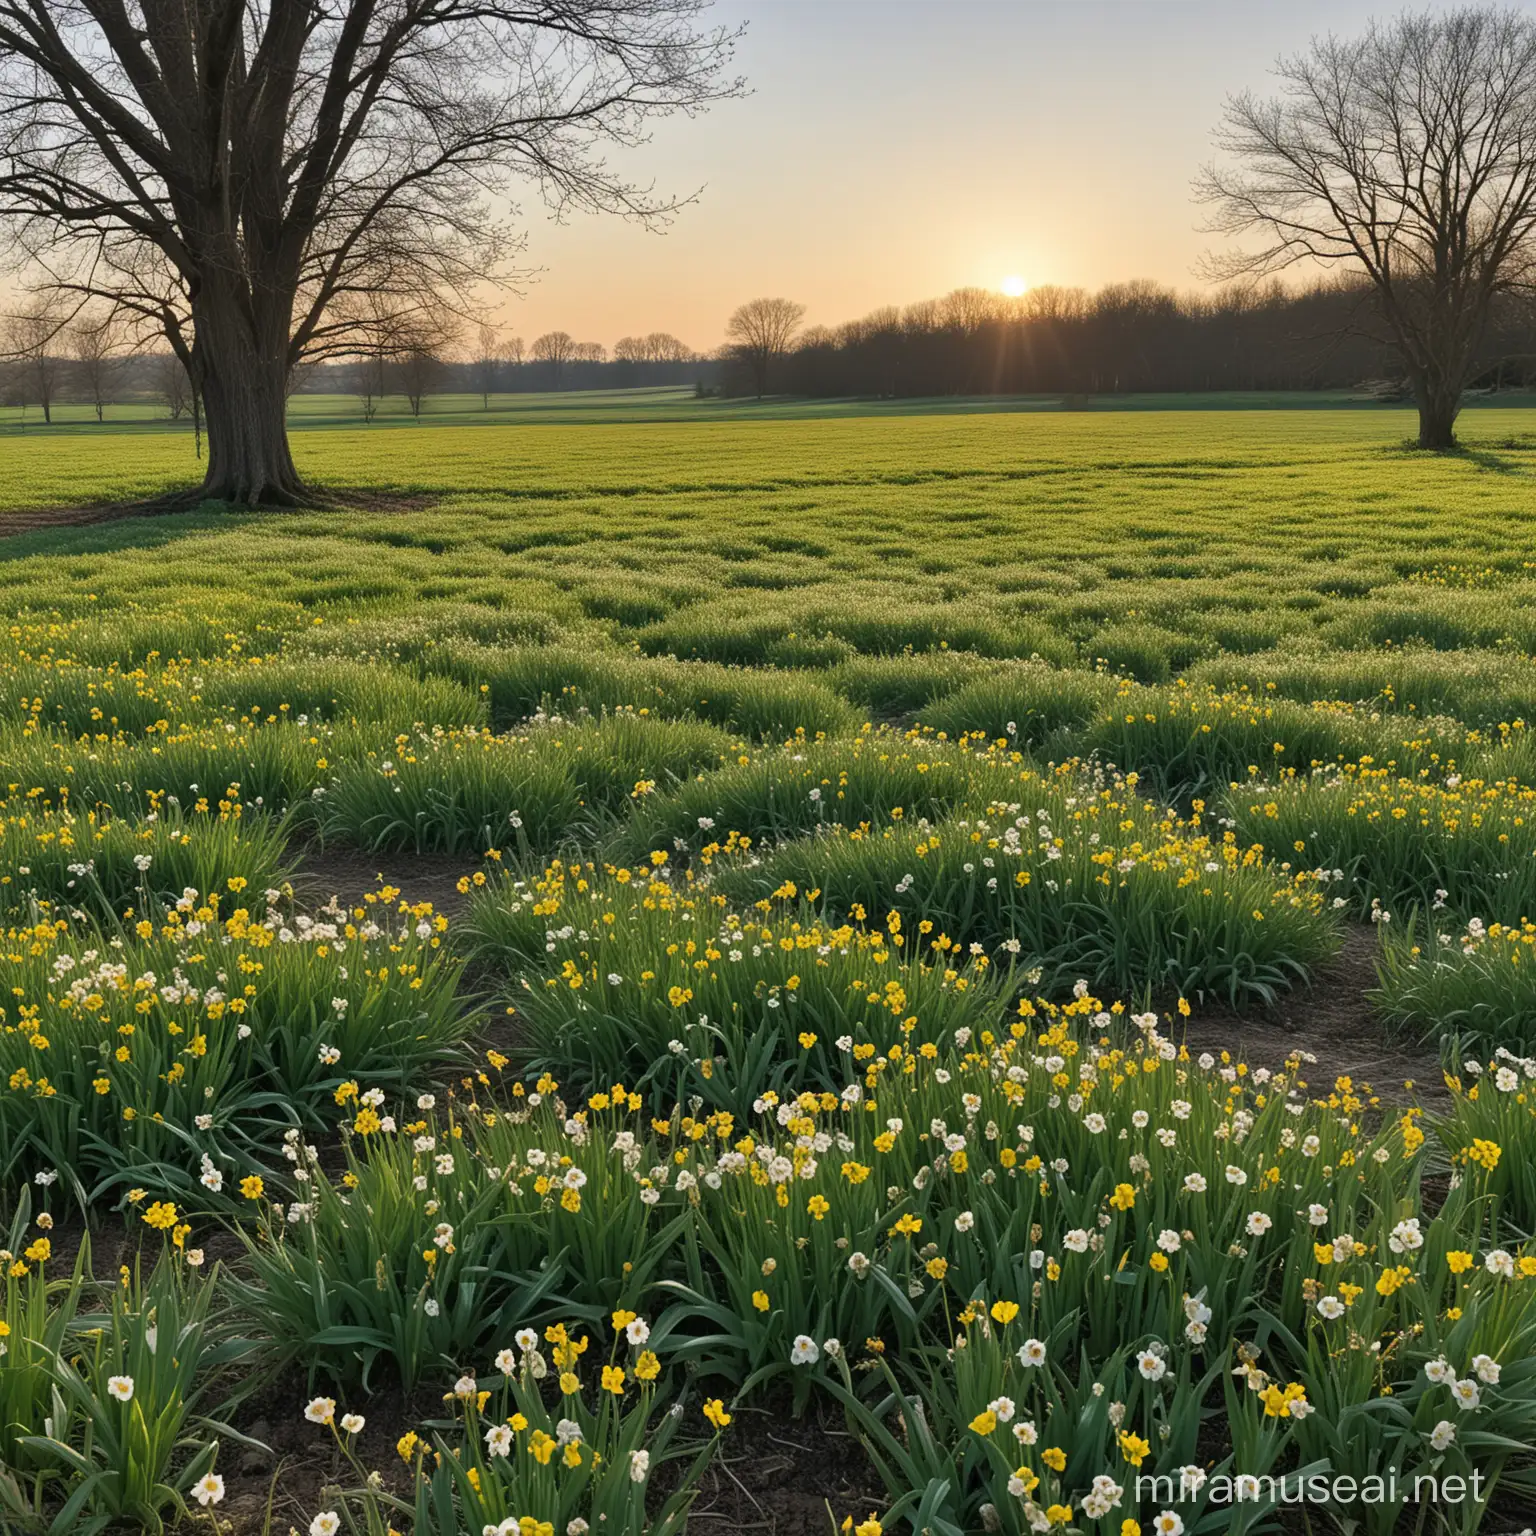 Lush Meadows in Full Bloom During Spring Awakening